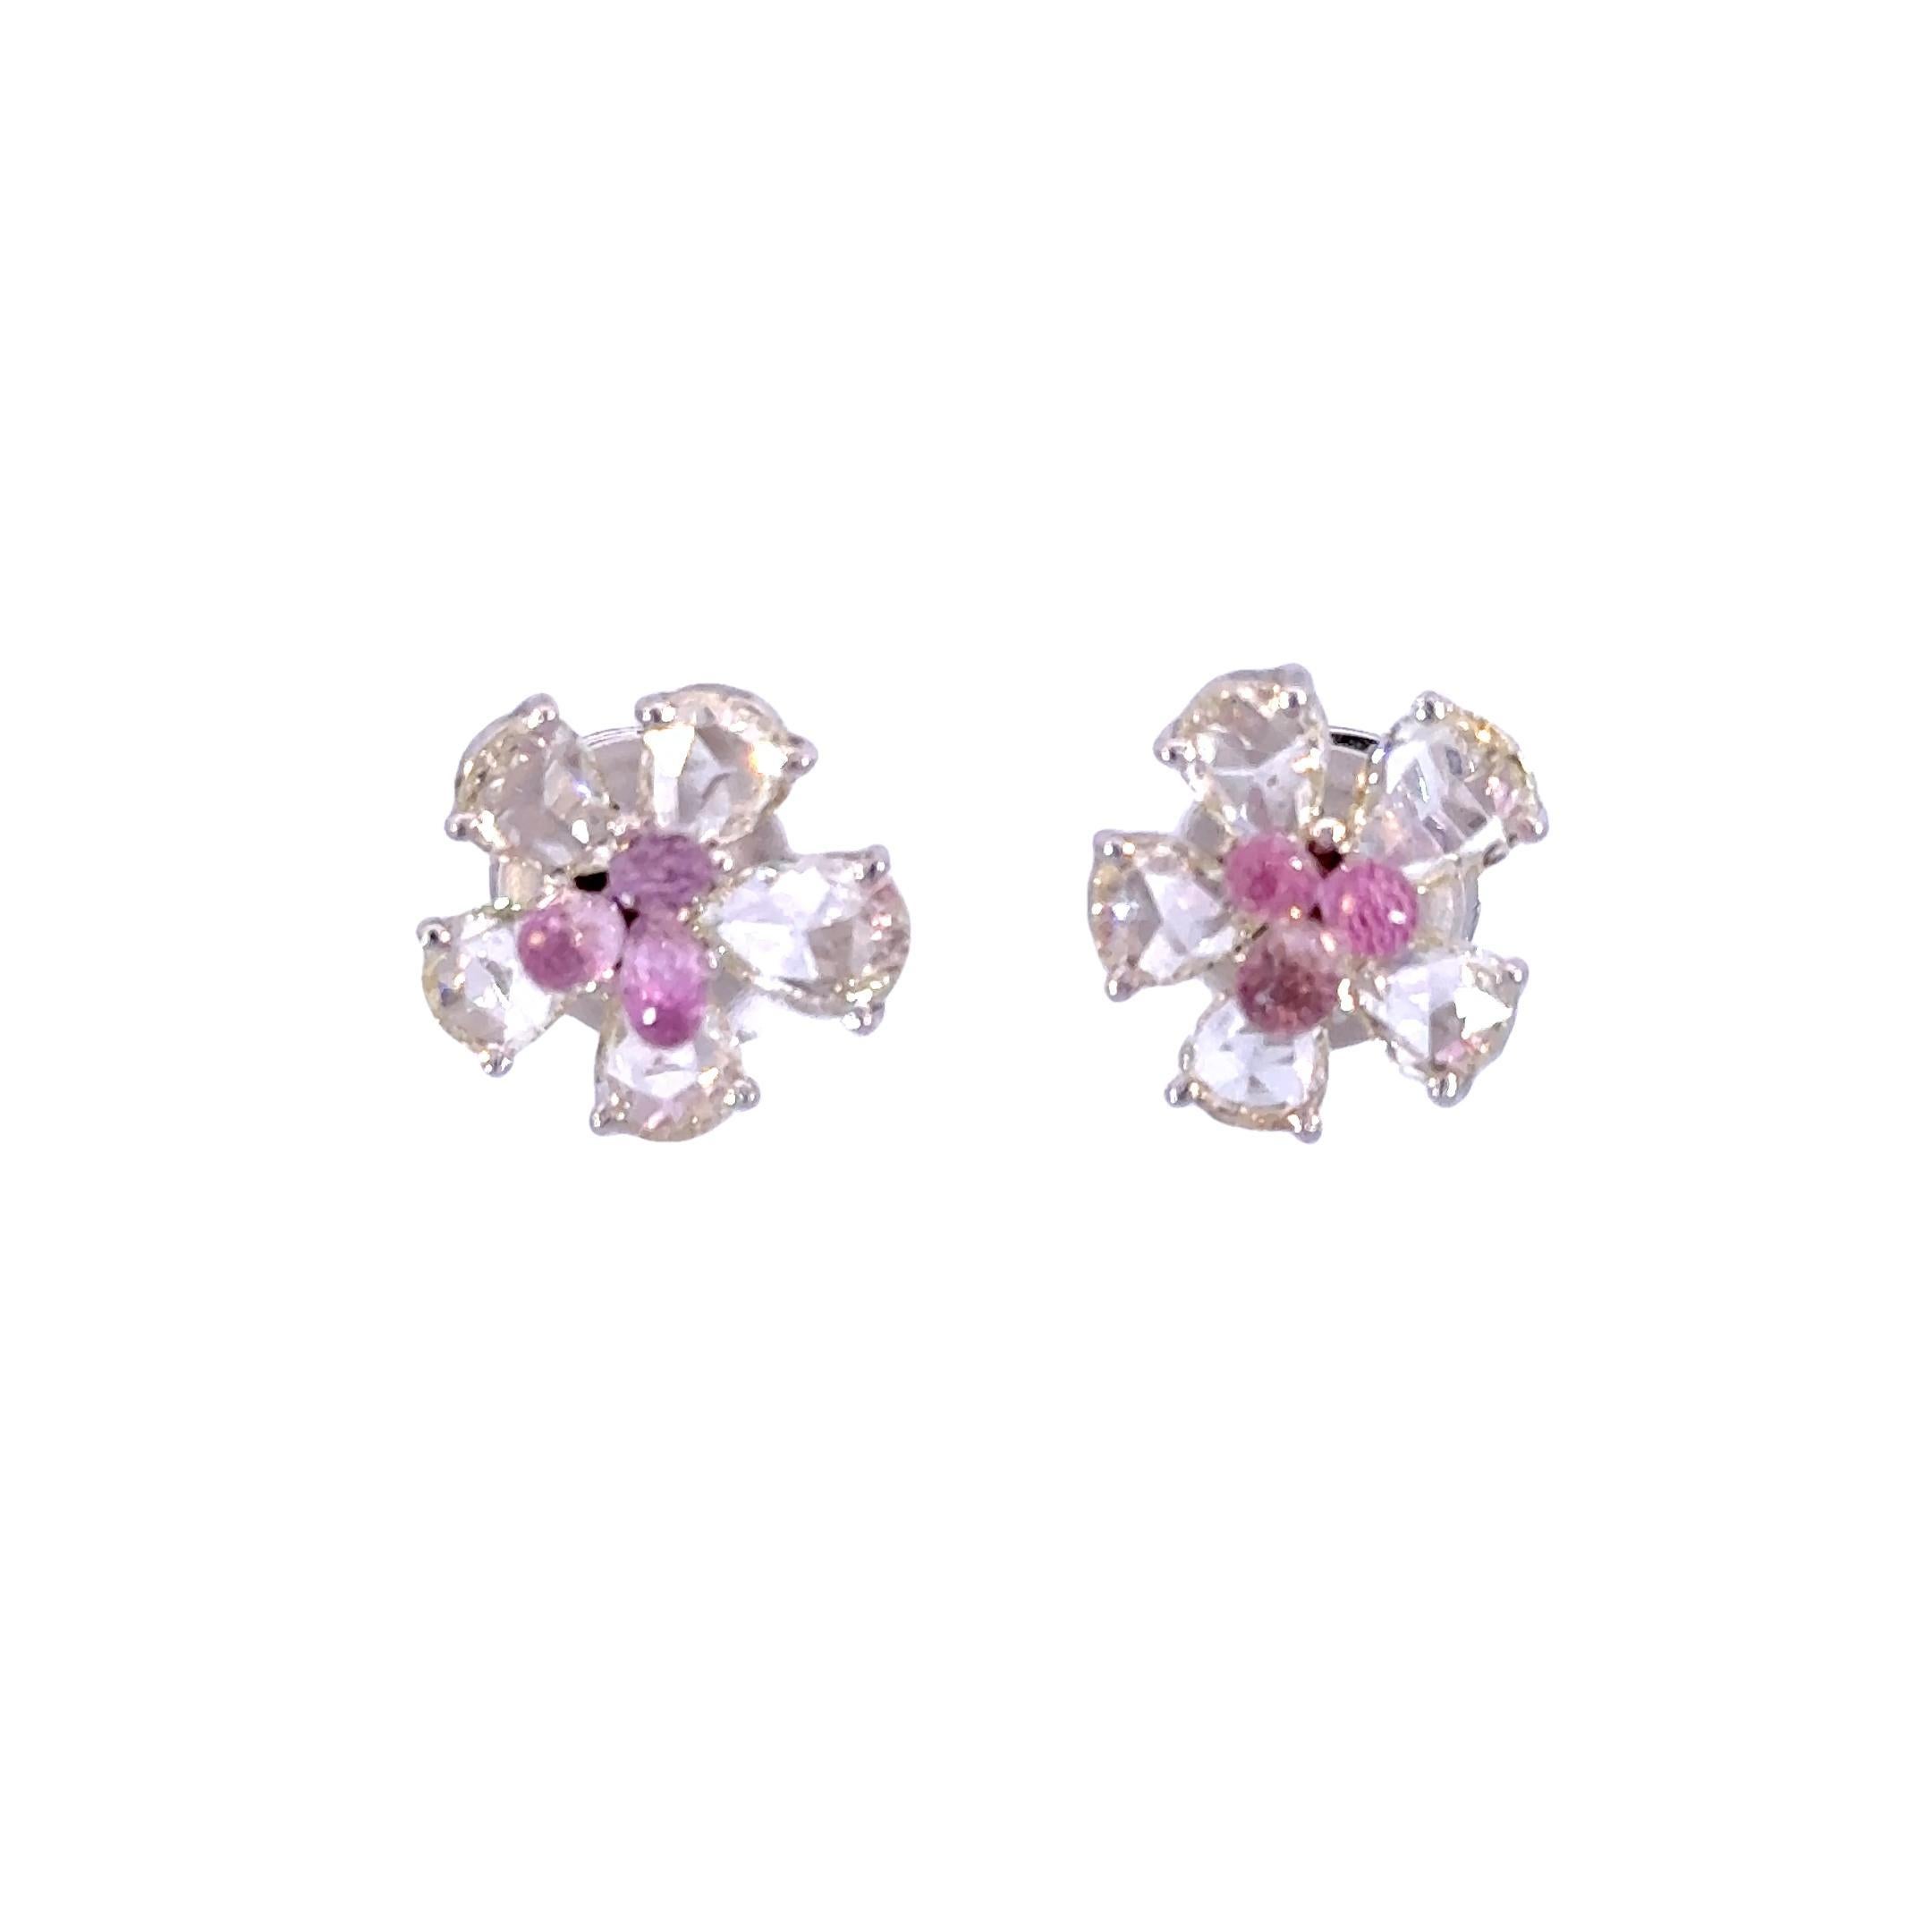 Voici nos boucles d'oreilles Tourmaline Rosecut, une paire délicate et enchanteresse qui allie la brillance intemporelle des diamants à l'allure captivante des tourmalines roses. Ces exquises boucles d'oreilles comportent 2,38 carats de diamants et